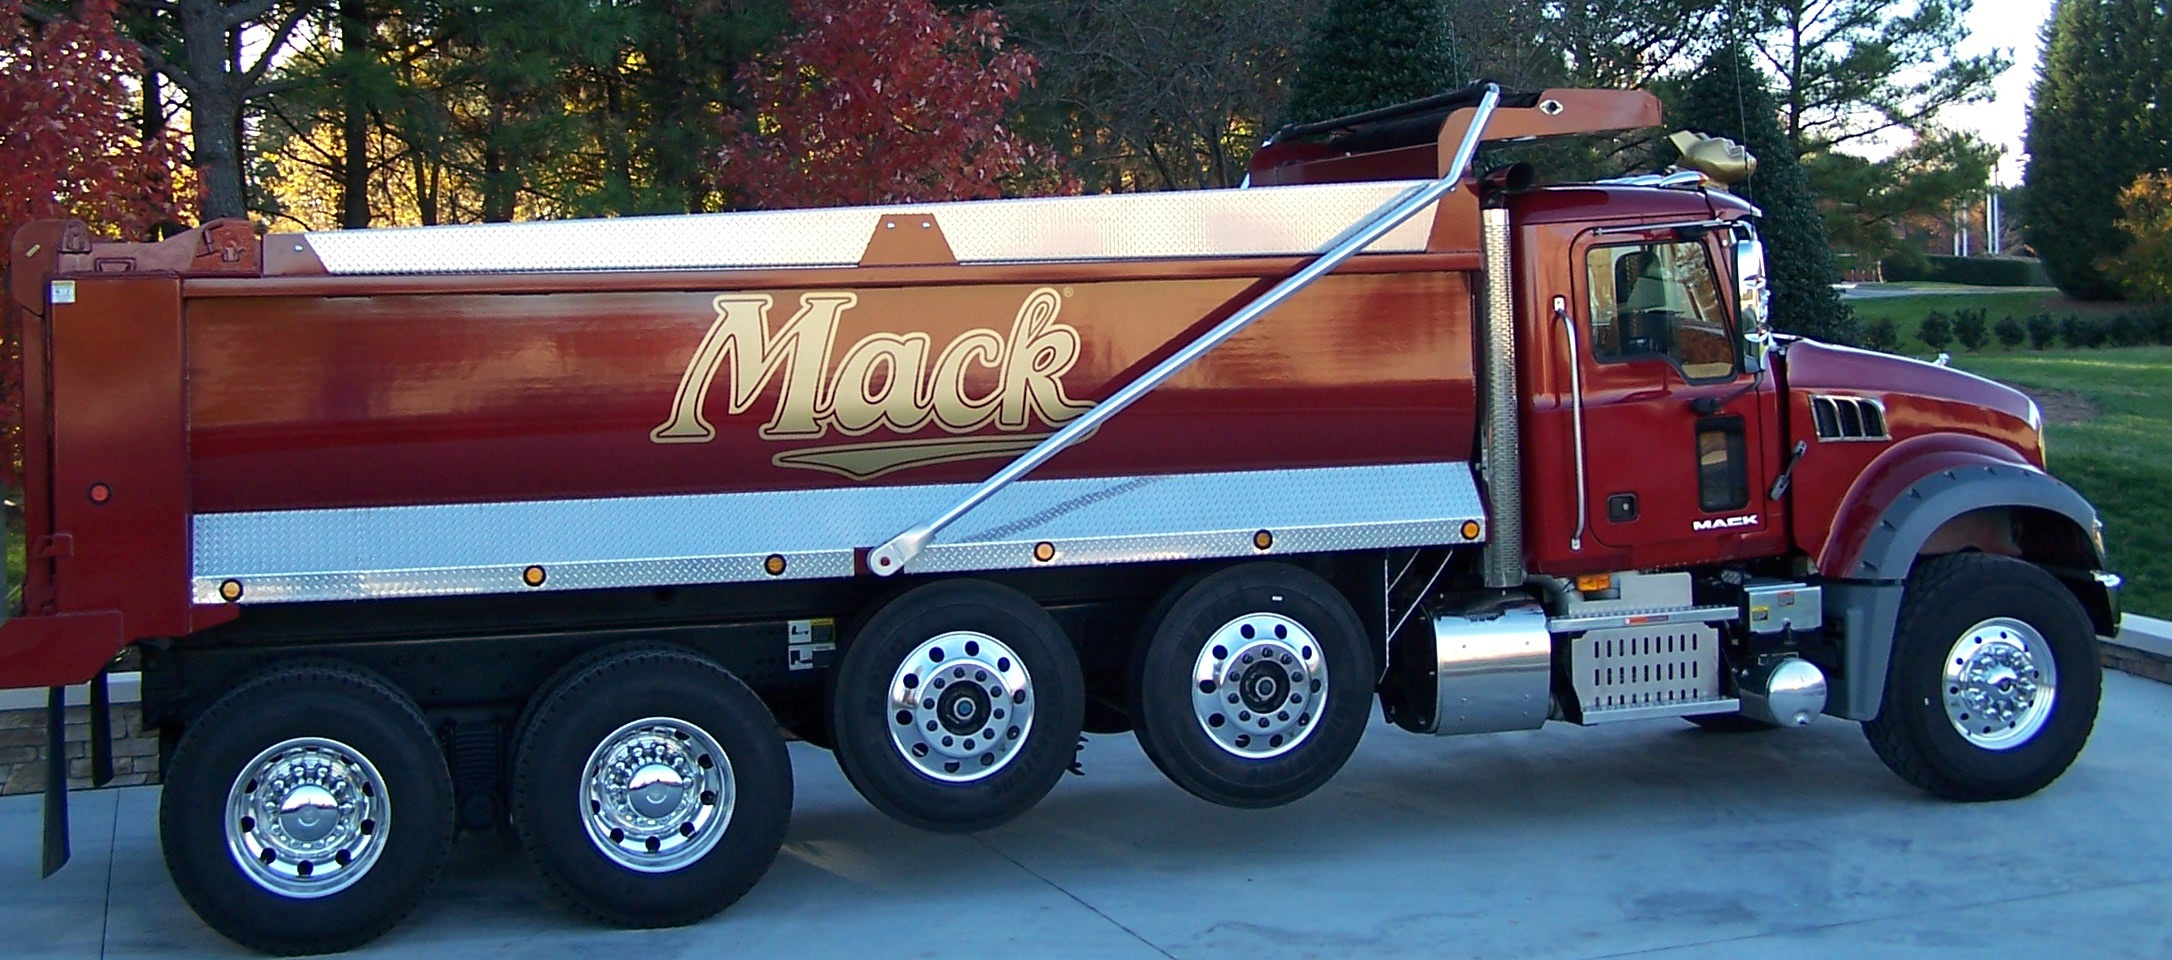 vehicles, mack trucks, trucks